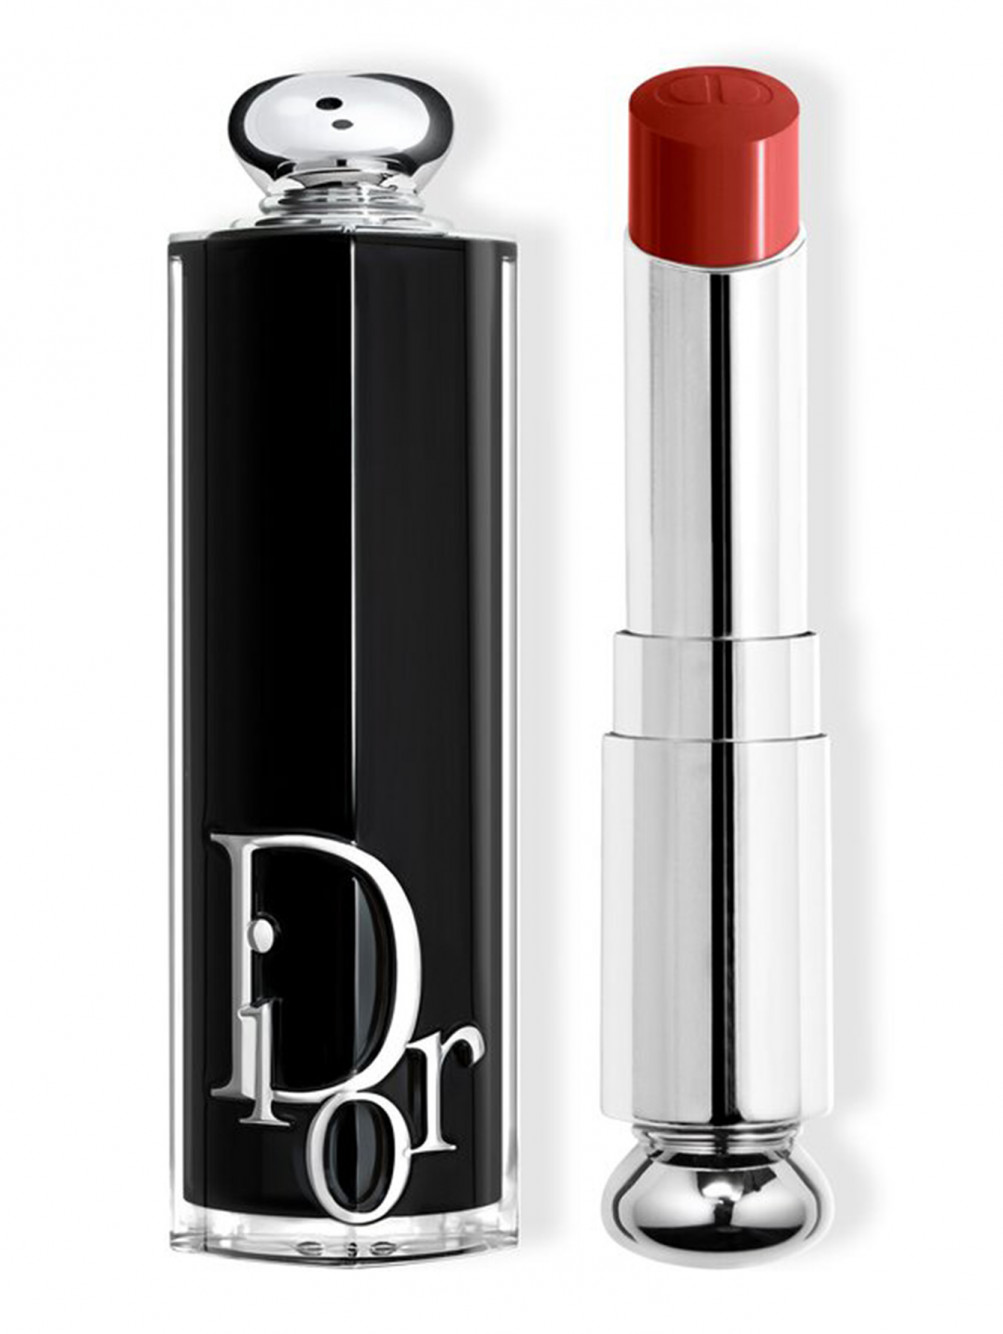 Помада для губ Dior Addict, 845 Виниловый Красный, 3,2 г - Общий вид